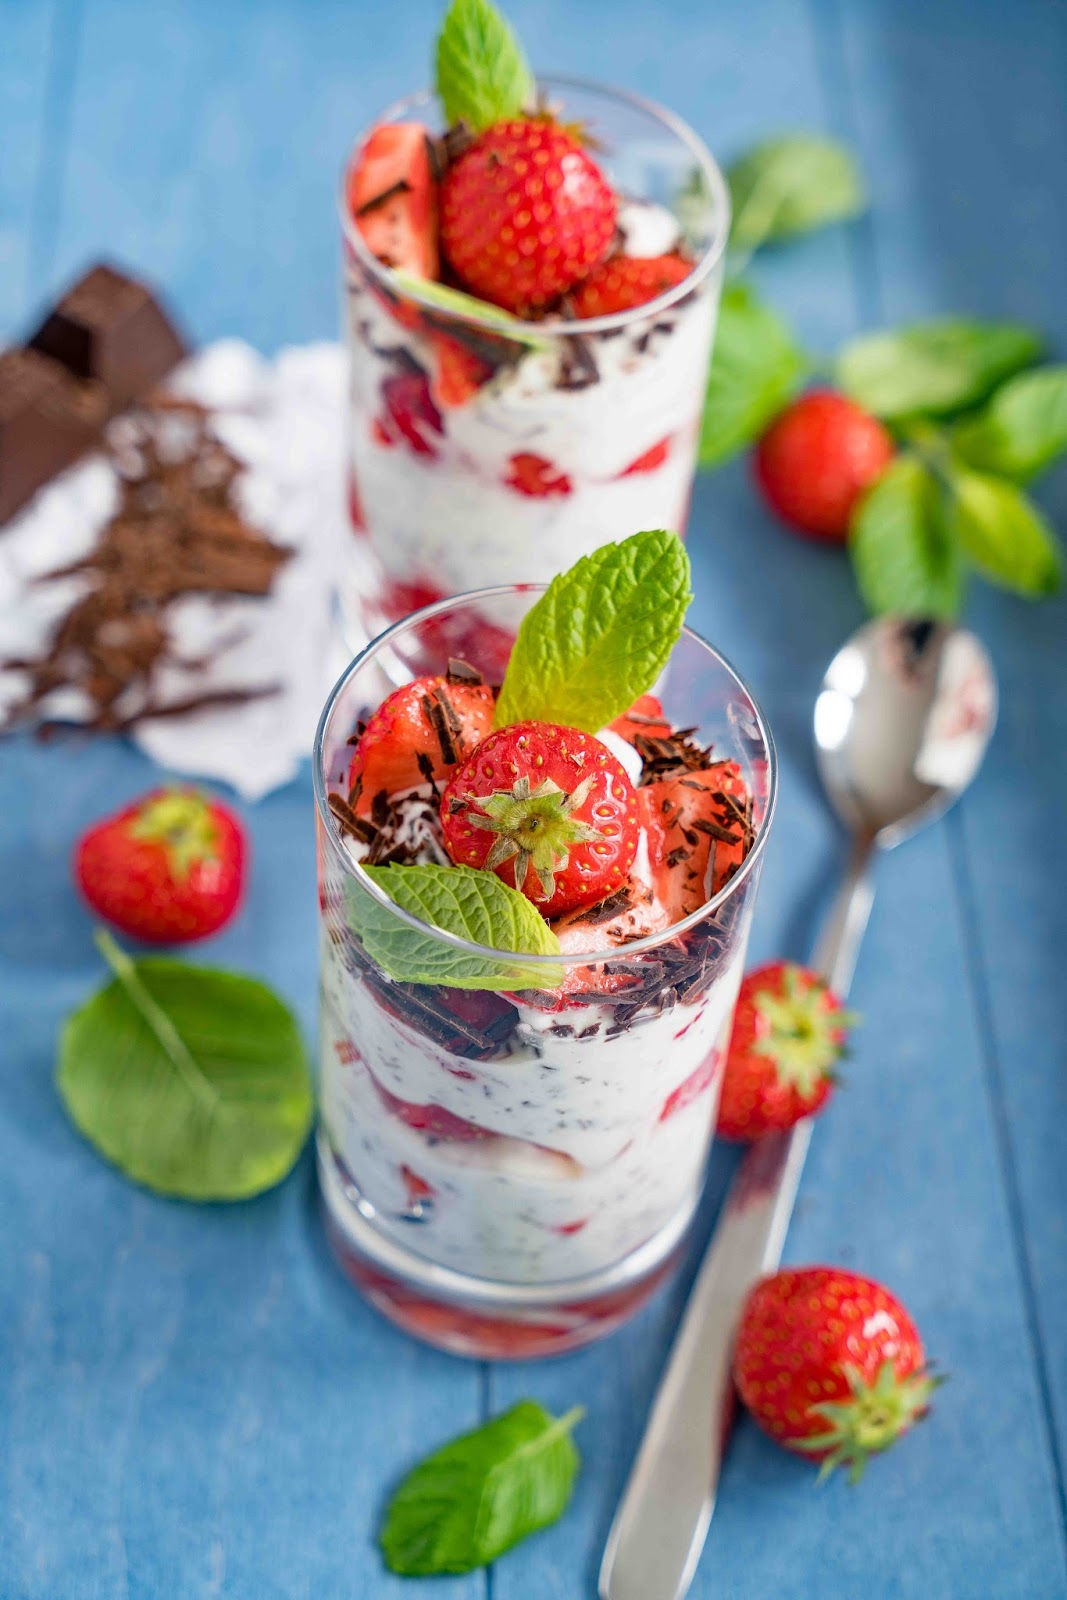 stuttgartcooking: Joghurt-Frischkäse-Stracciatella mit Erdbeeren und Minze